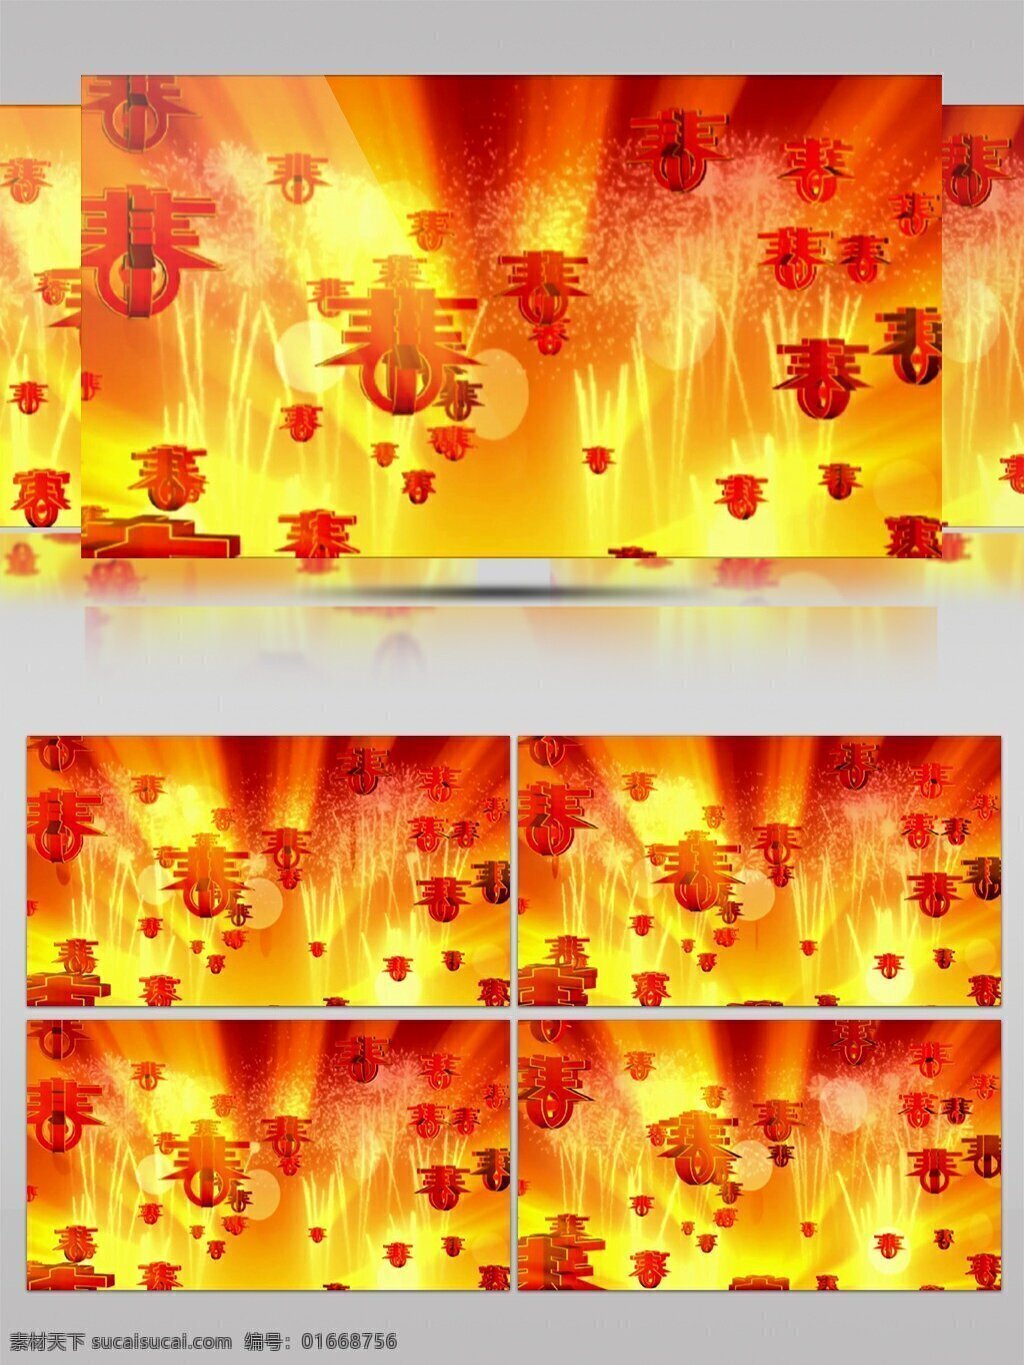 红色 春节 剪纸 高清 视频 动态视频素材 高清视频素材 红红火火 视频素材 装吧